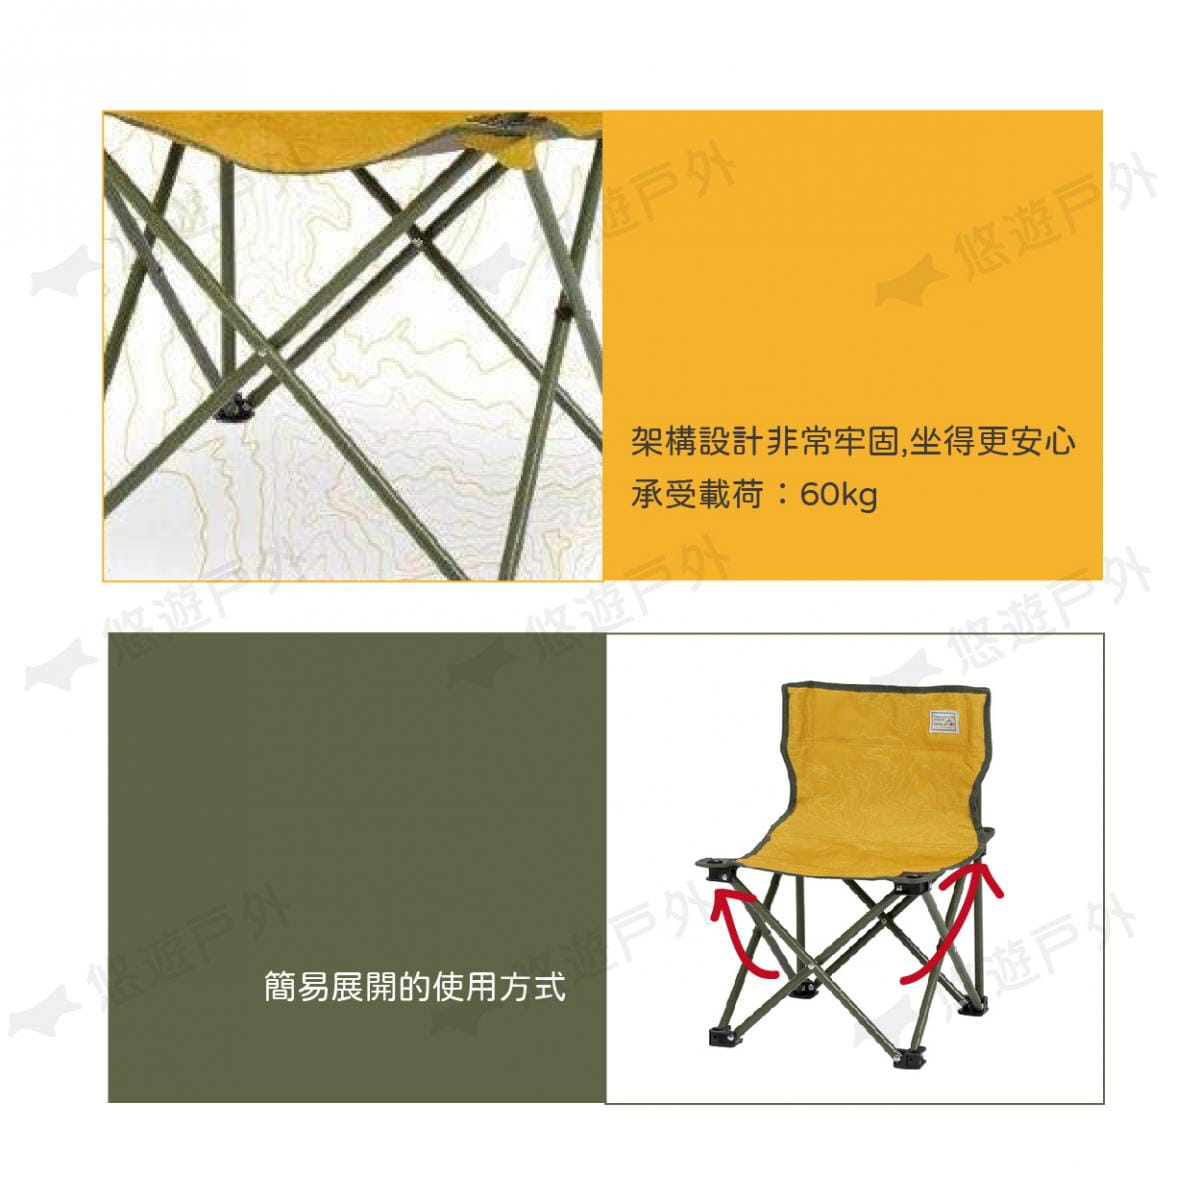 【日本鹿牌】等高線野營椅 UC-1806 露營椅 休閒椅 摺疊椅 便攜椅 單人椅 釣魚 居家 露營 2